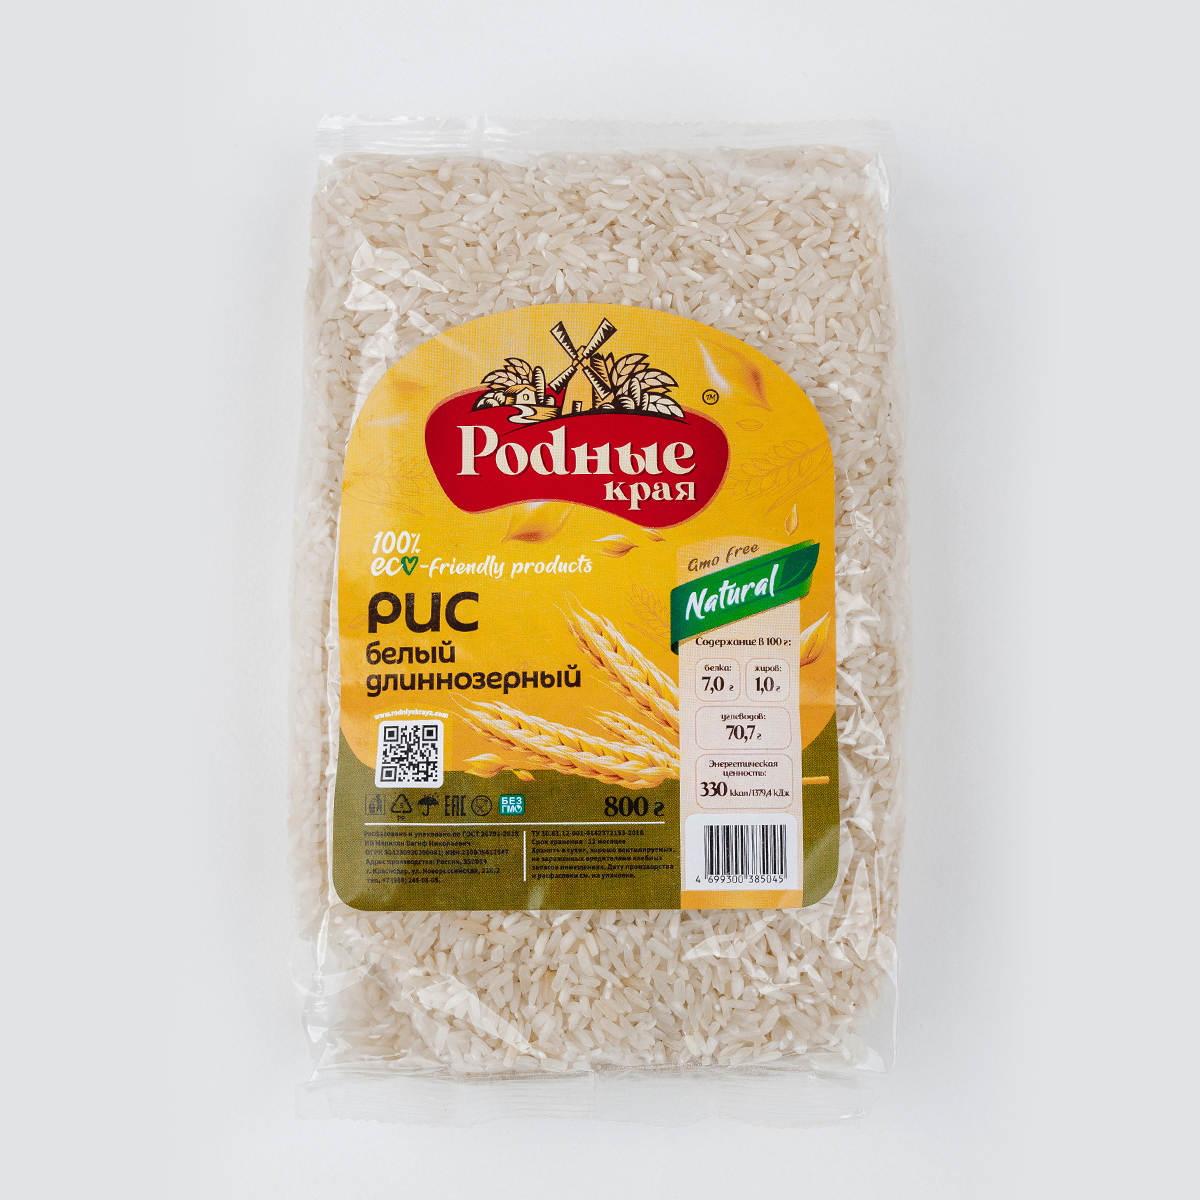 Рис белый длиннозерный 0.8кг